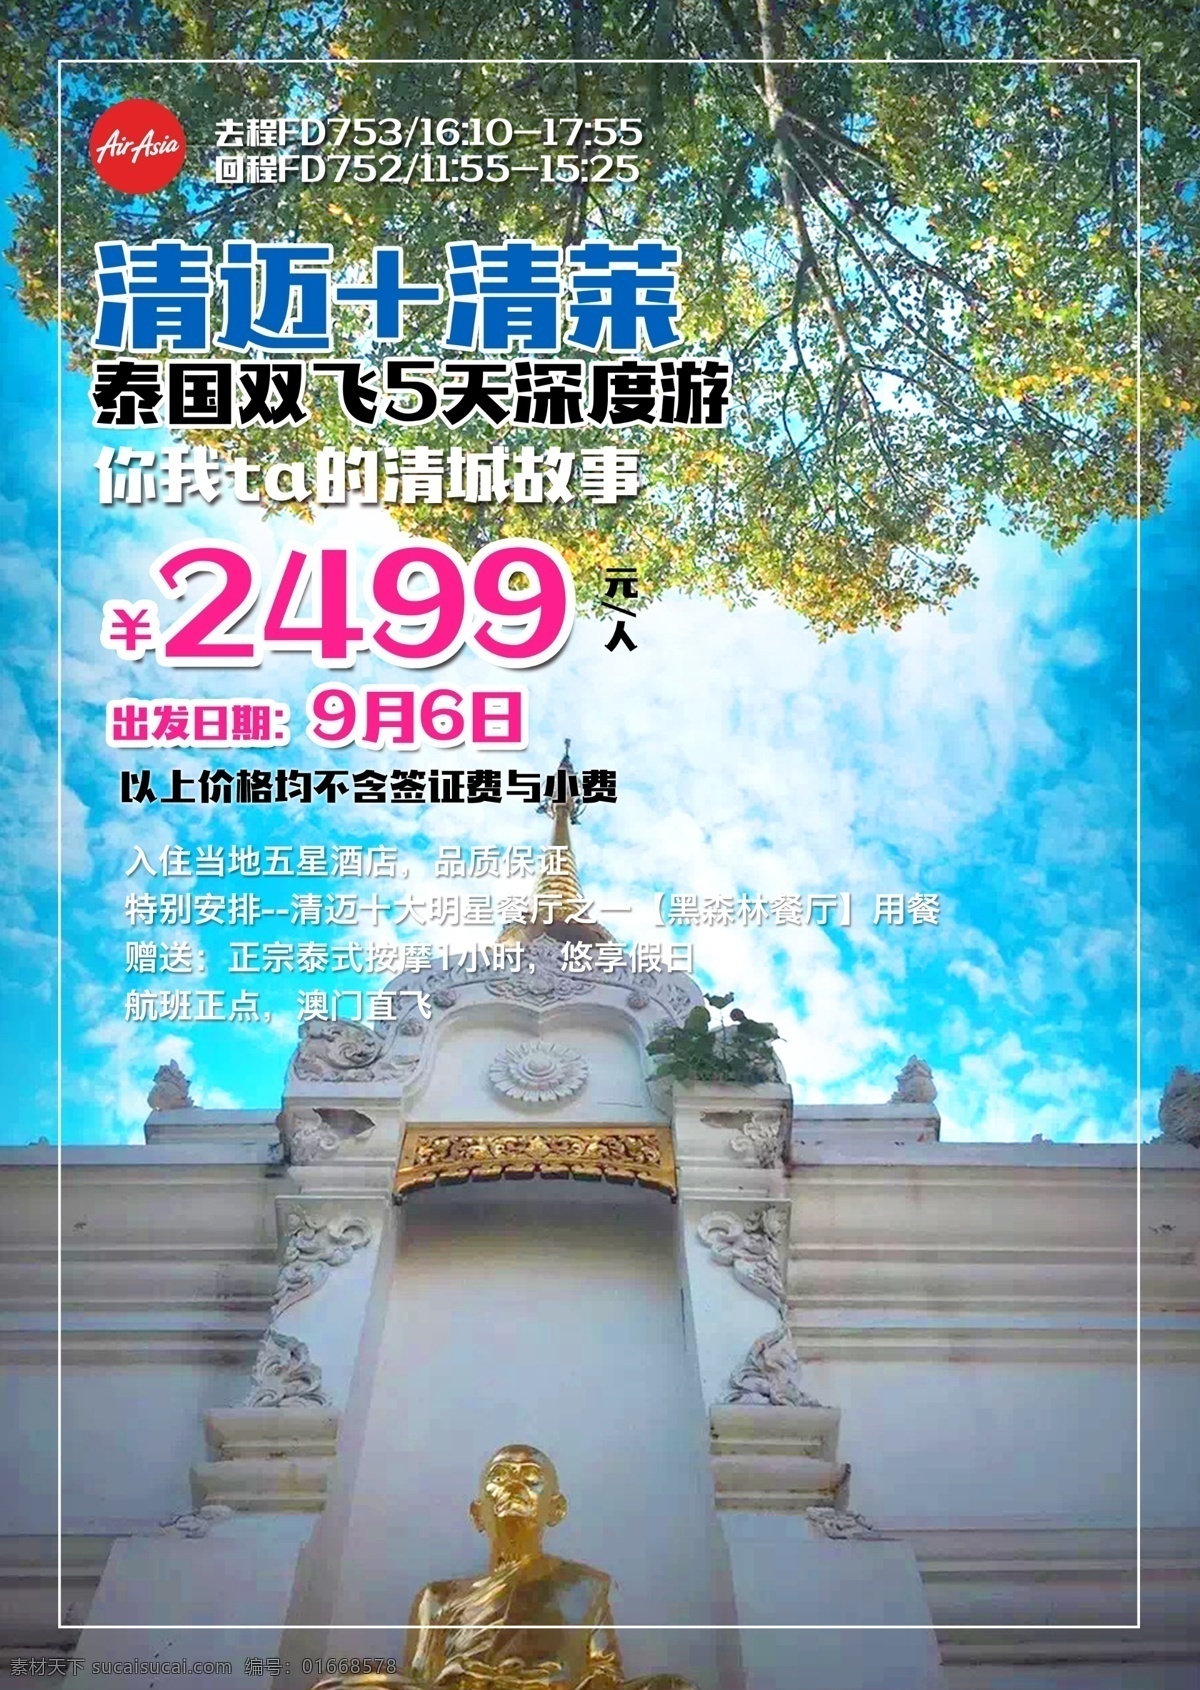 清迈 清新 旅游 旅行 宣传海报 清莱 海报 宣传 促销